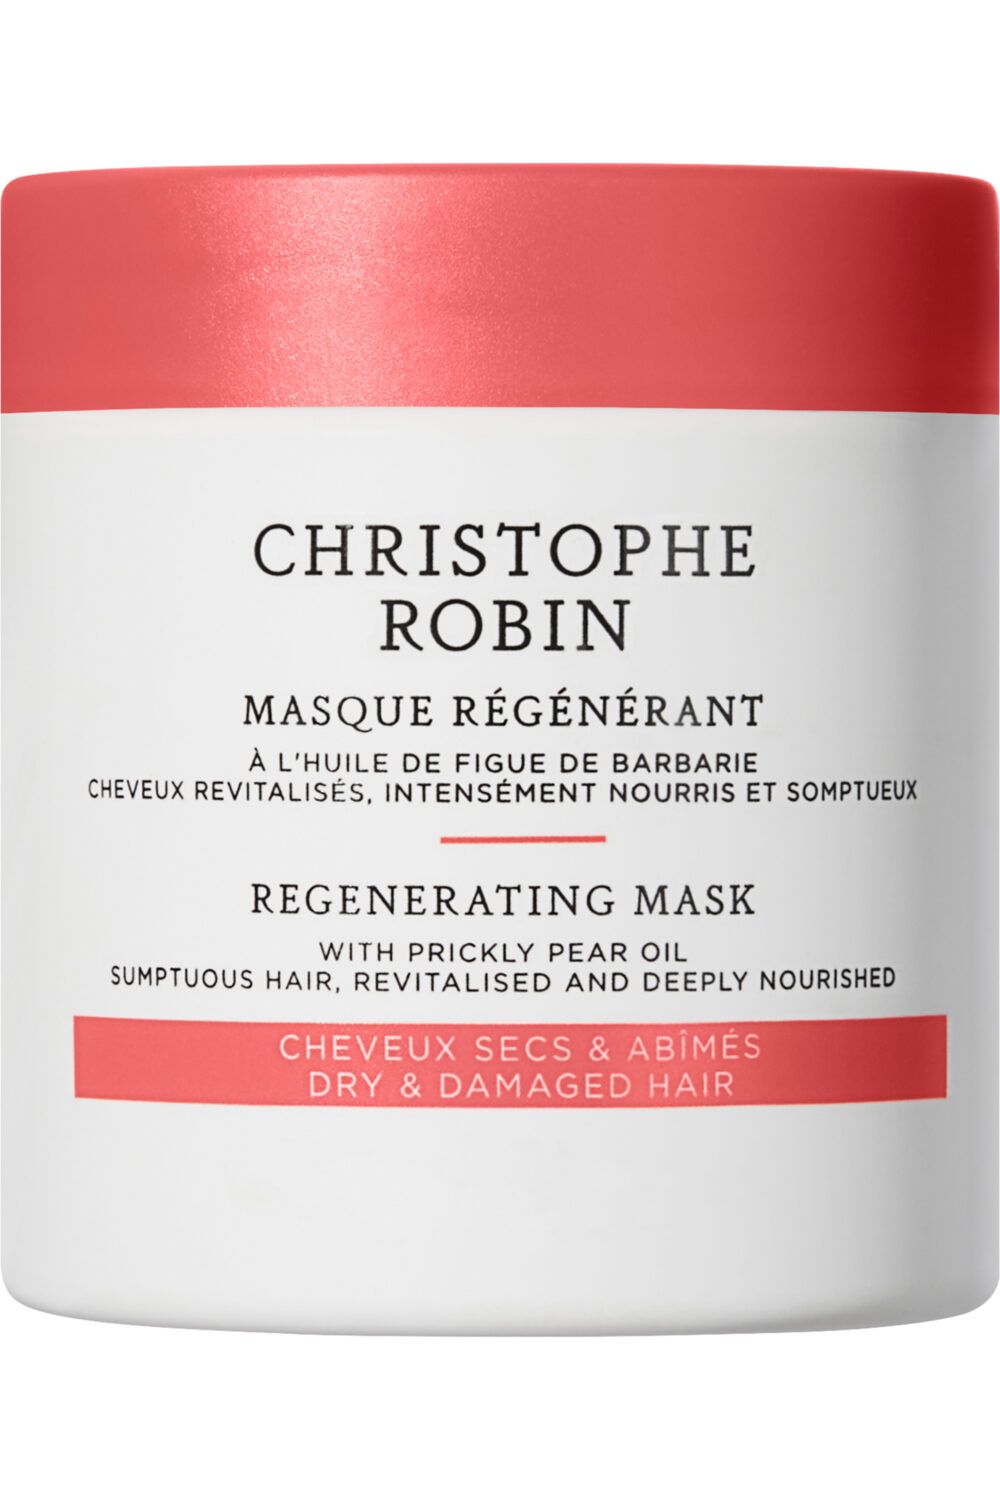 Christophe Robin - Masque régénérant à l'huile de figue de barbarie 75ml